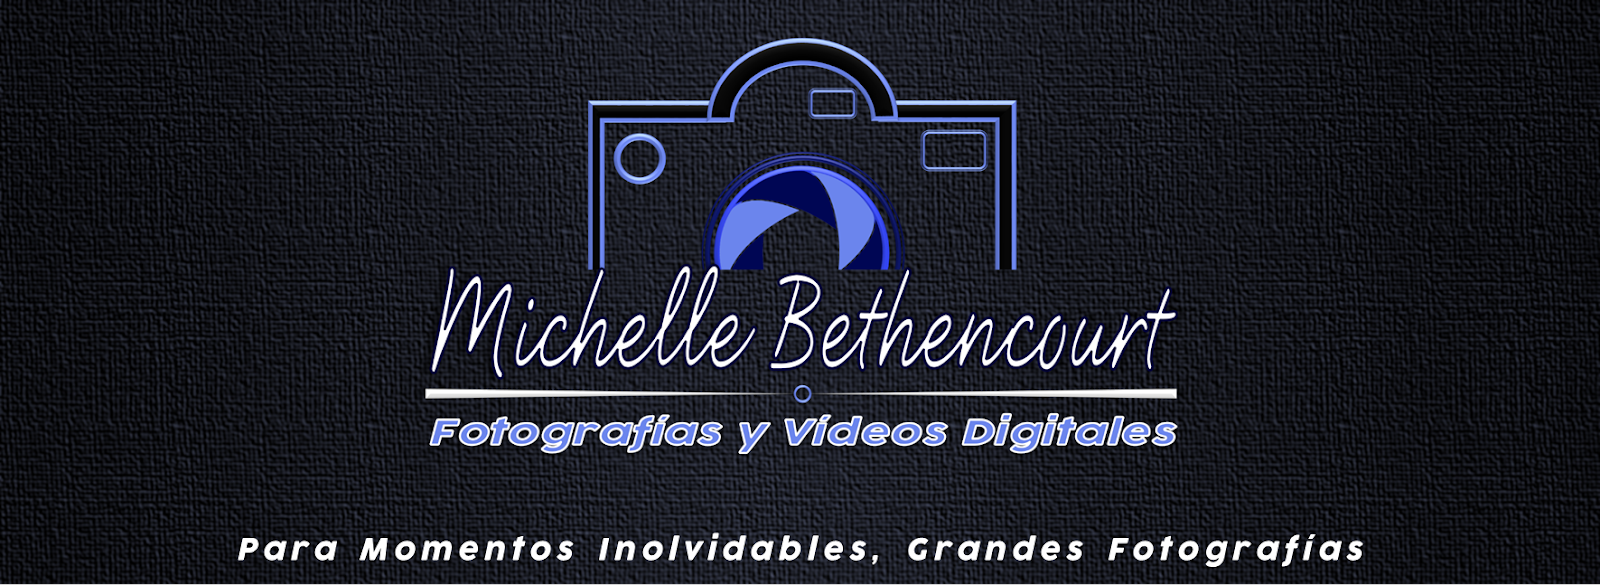 Michelle Bethencourt Fotografias y Videos Digitales